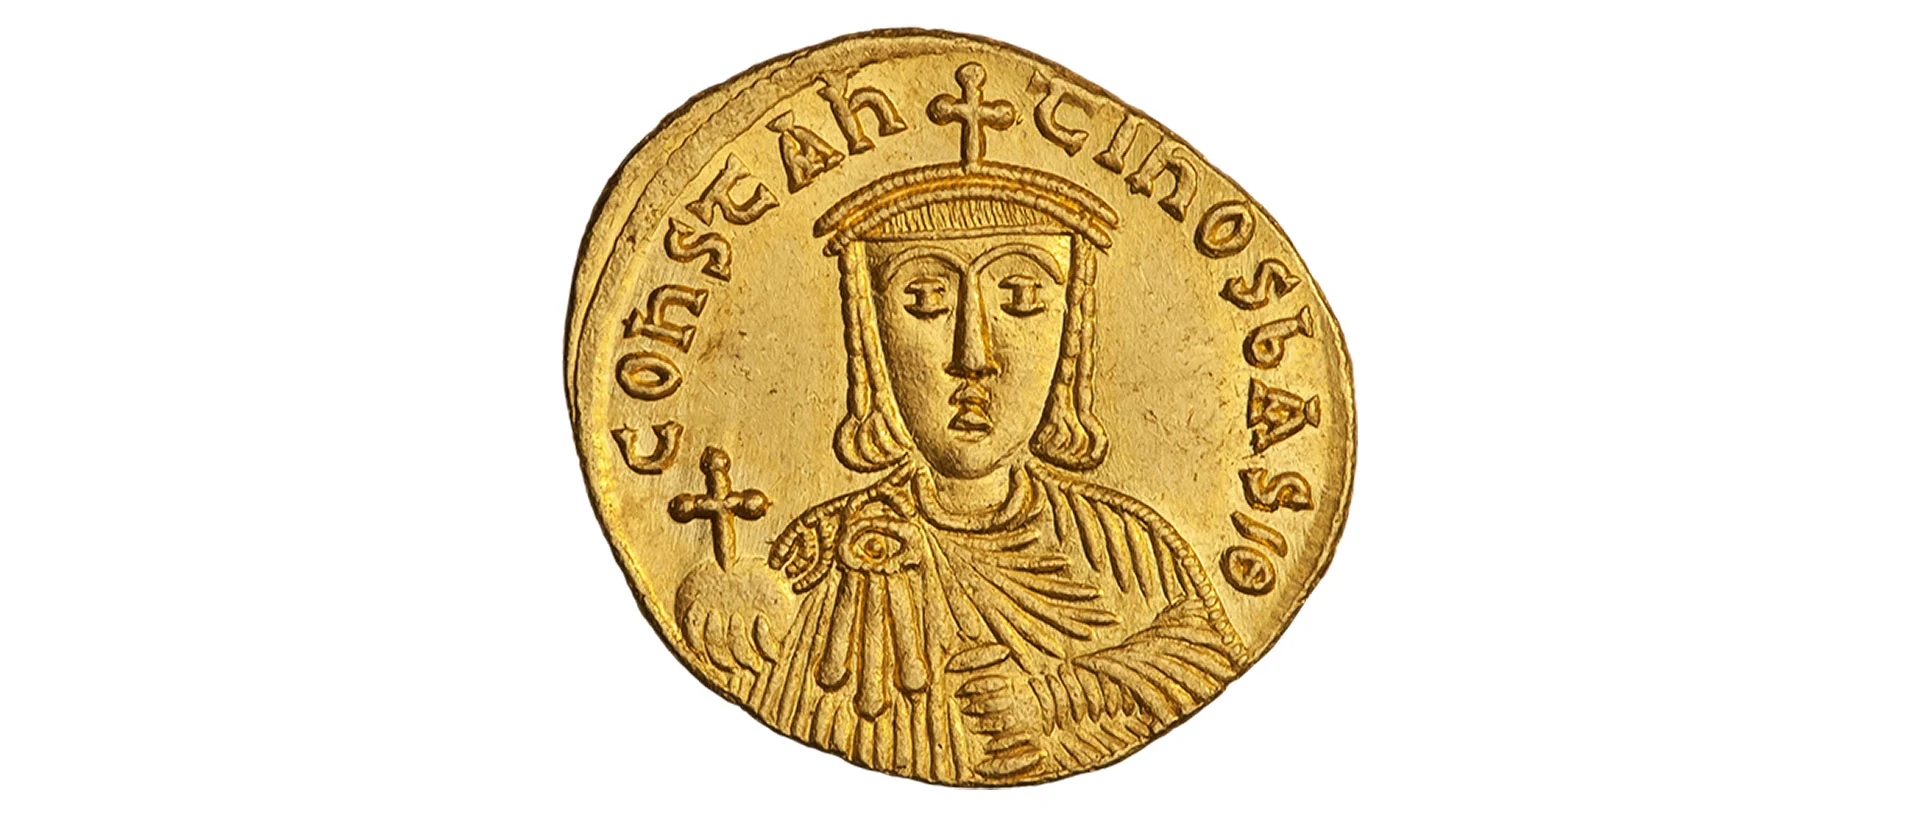 Porträt von Kaiser Kontantin auf einer goldenen Münze